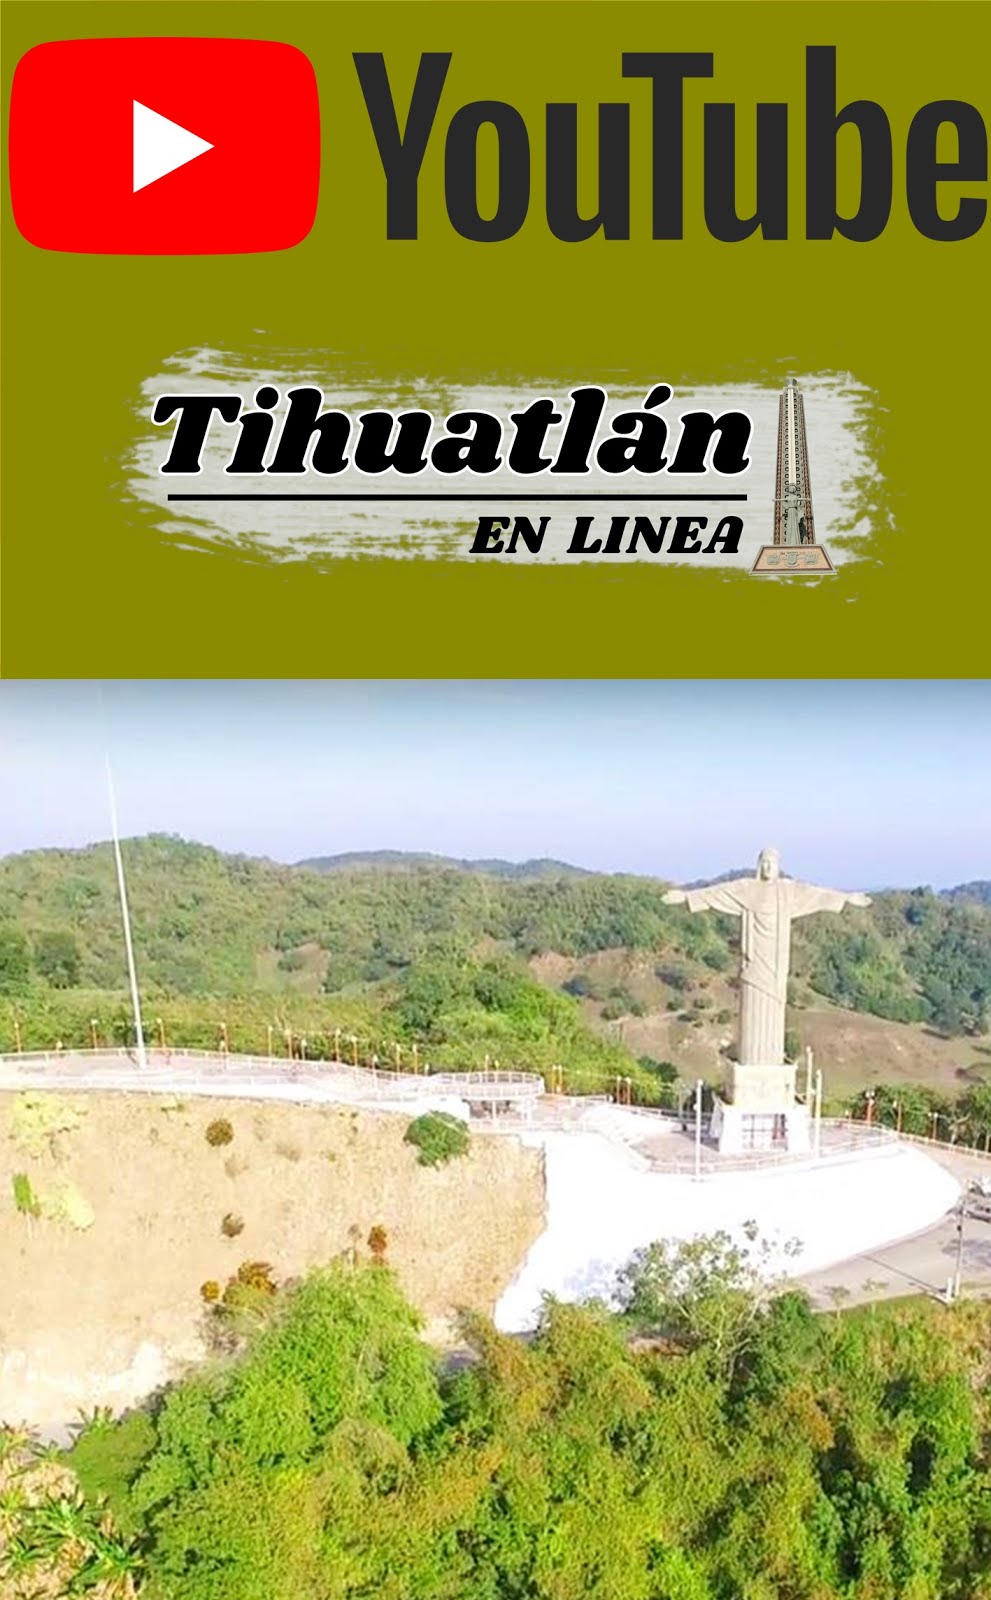 Youtube Tihuatlan